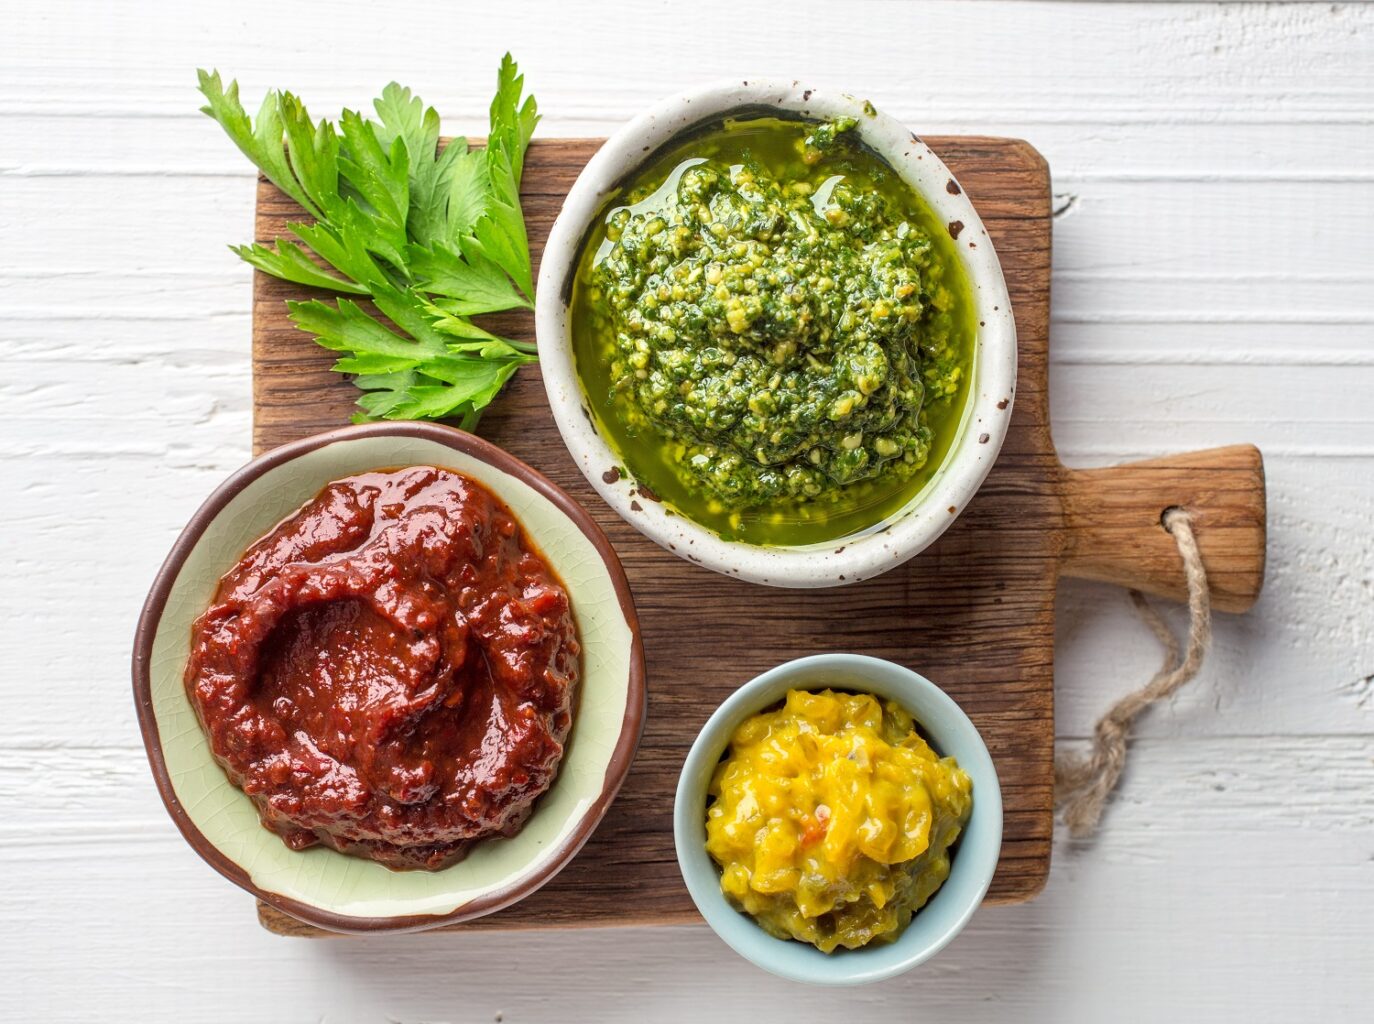 3 boluri cu sosuri diferite, galben, verde și roșu, pe un tocator de lemn, fotografiate de sus. Imagine reprezentativă pentru cele mai populare sosuri din lume